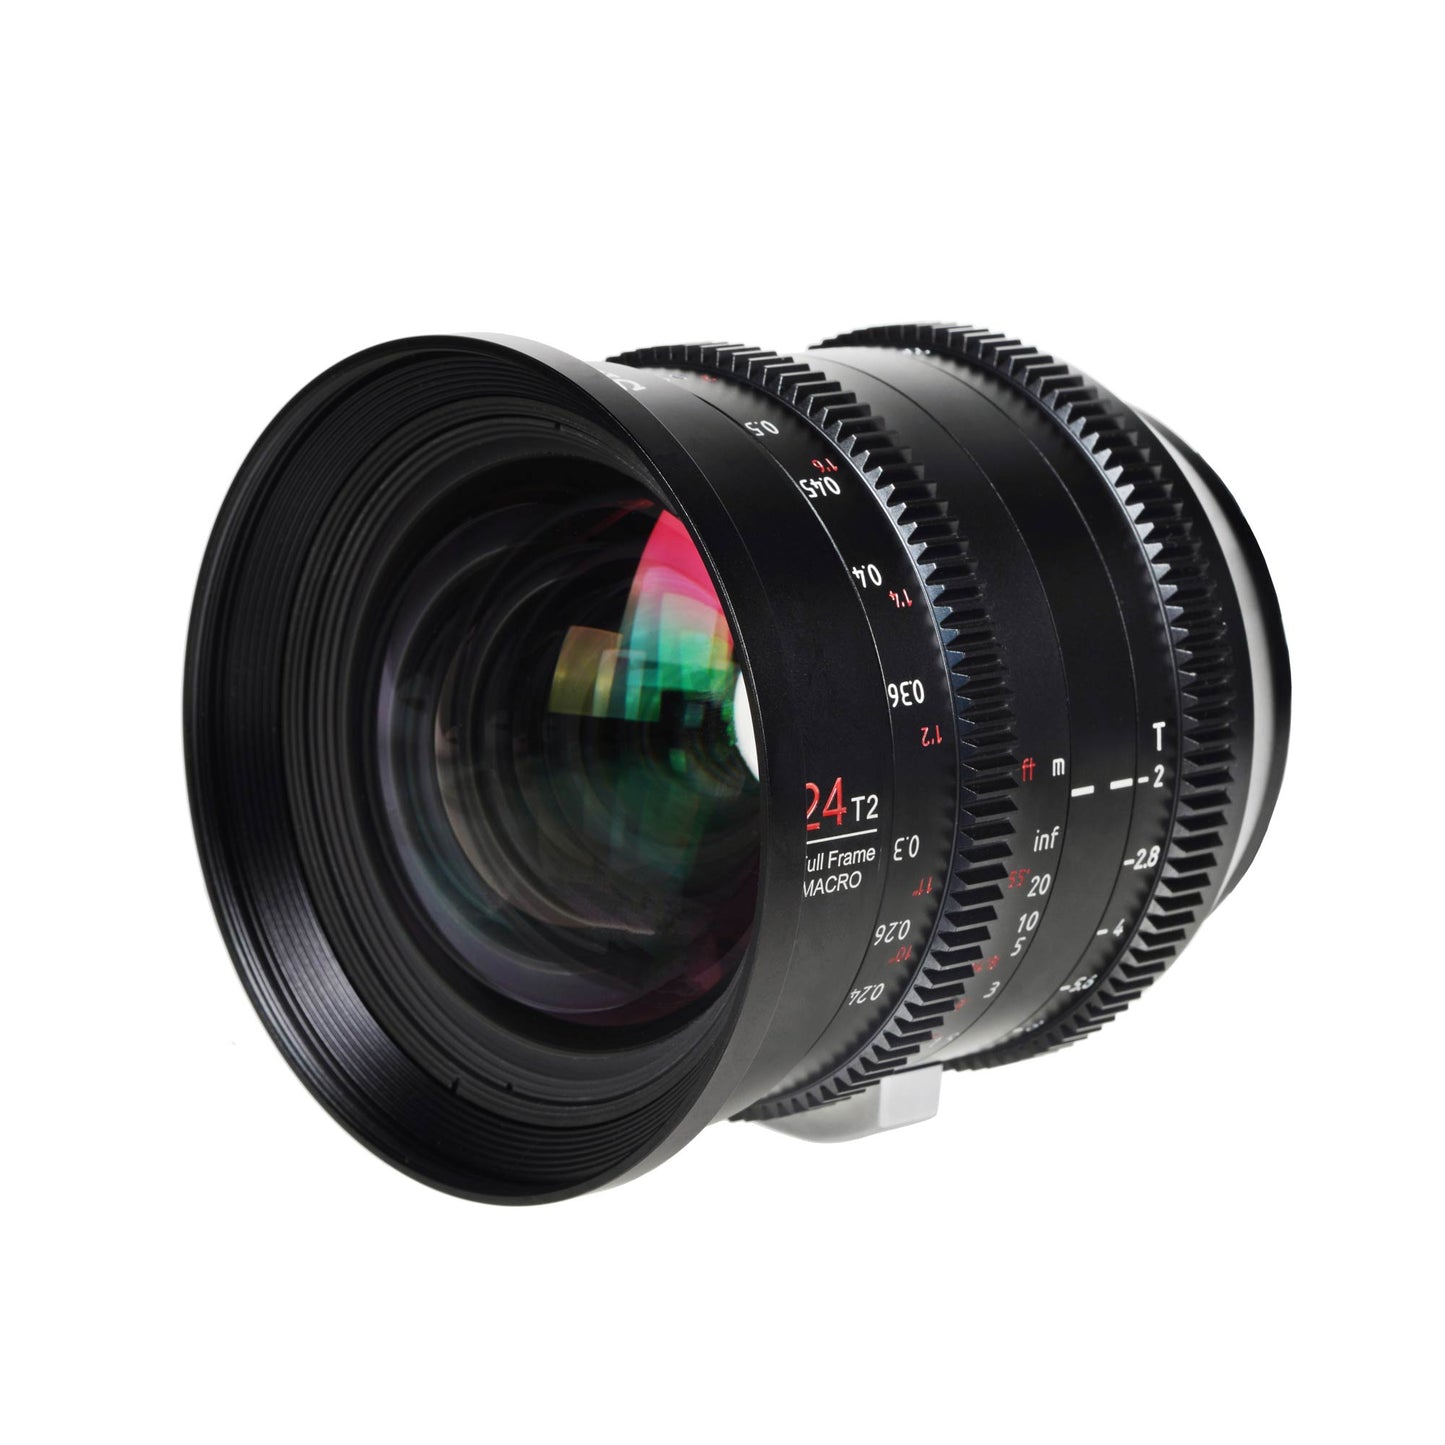 SIRUI Jupiter 24mm T2 Macro Cine Full Frame Lens / Film Lens